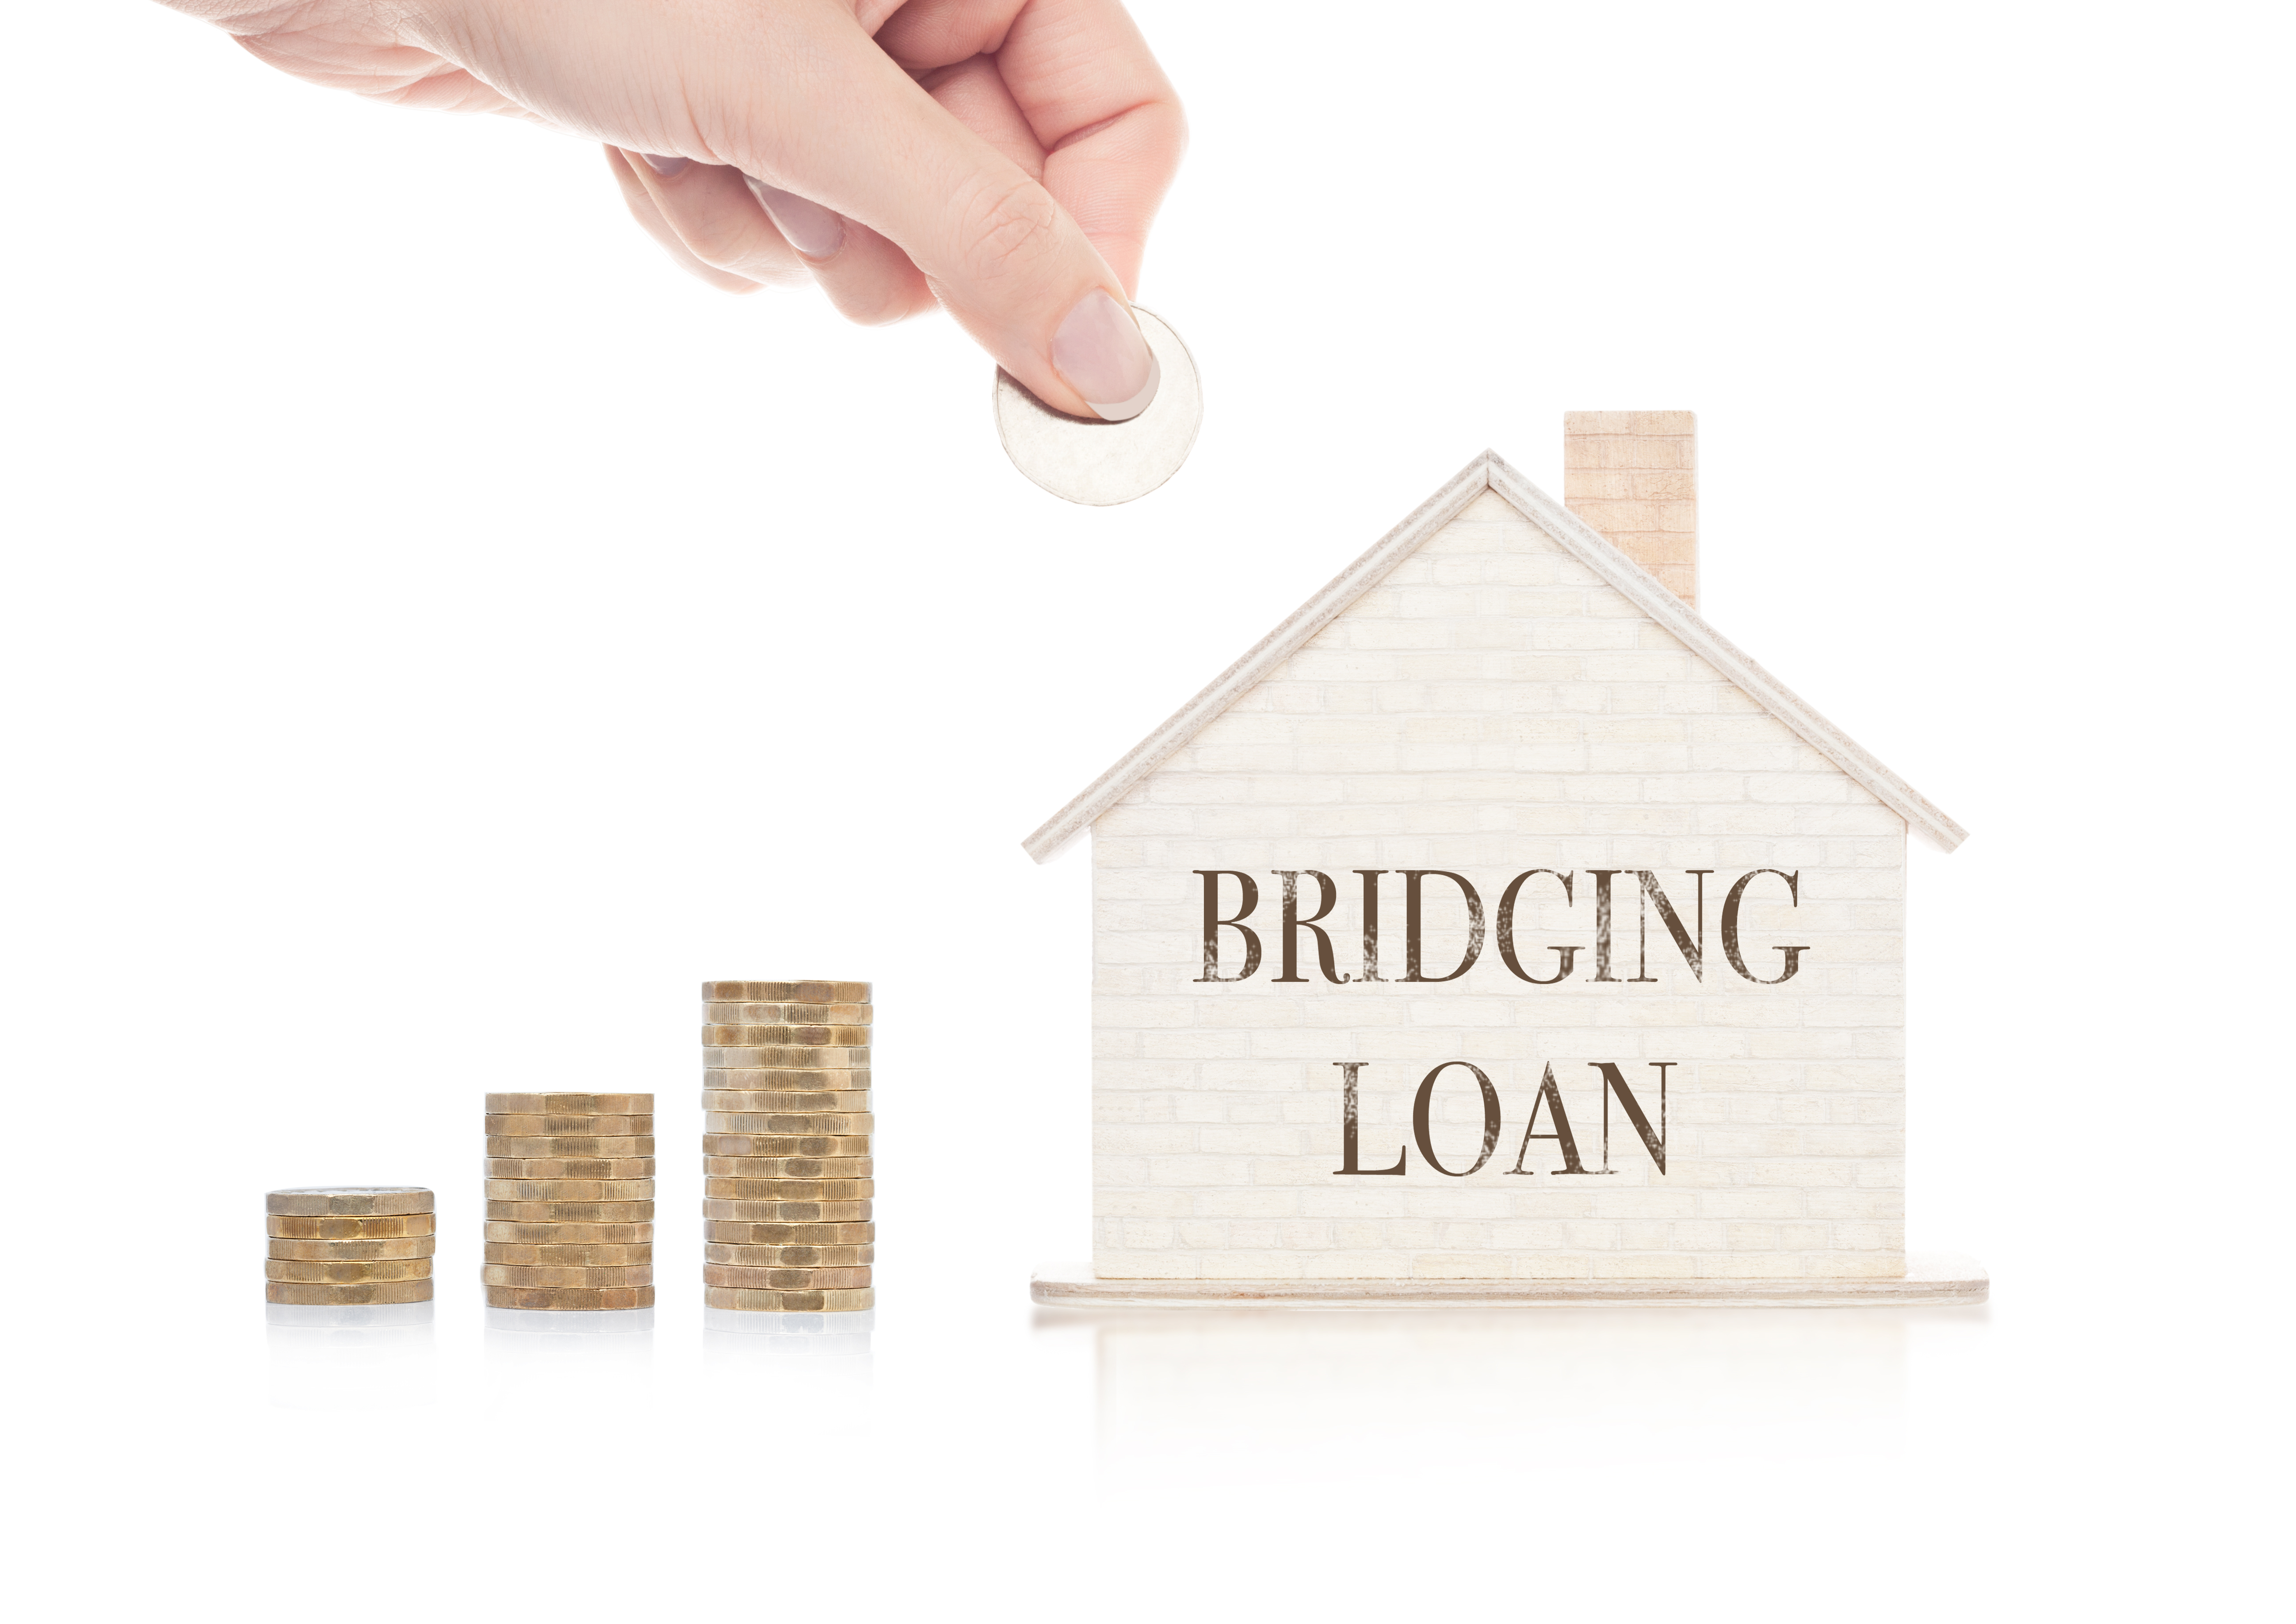 Bridging loan house image